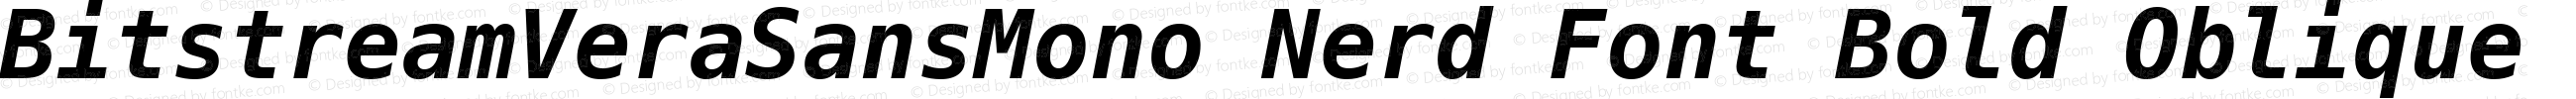 Bitstream Vera Sans Mono Bold Oblique Nerd Font Plus Octicons Plus Font Linux Mono